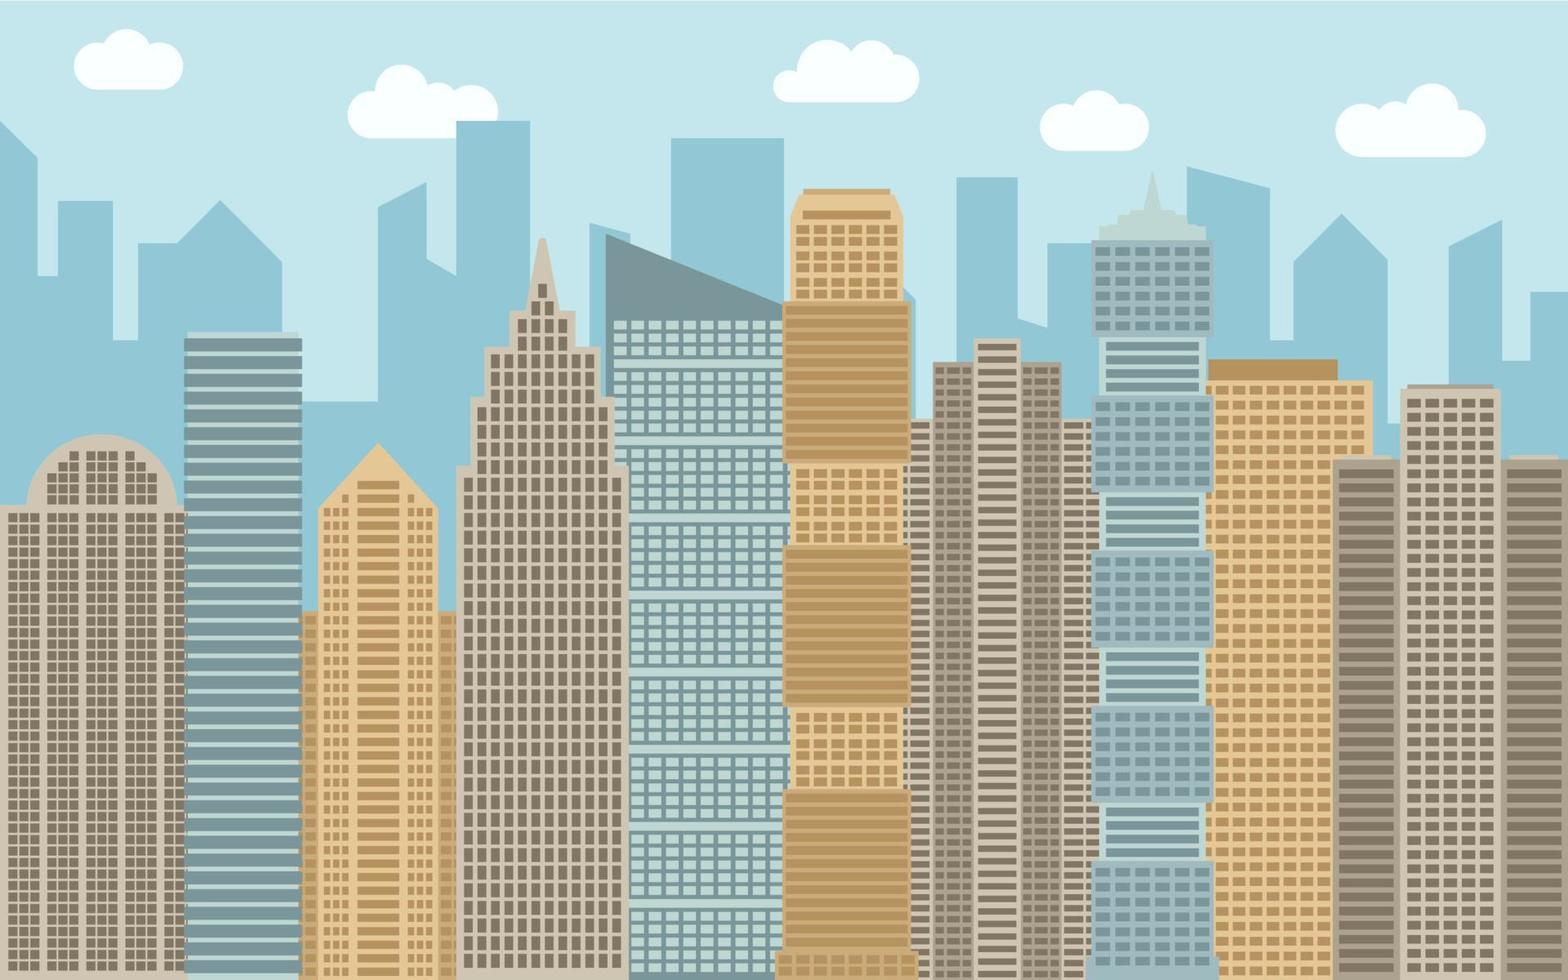 ilustración de paisaje urbano vectorial. vista de la calle con paisaje urbano, rascacielos y edificios modernos en un día soleado. espacio de la ciudad en concepto de fondo de estilo plano. vector